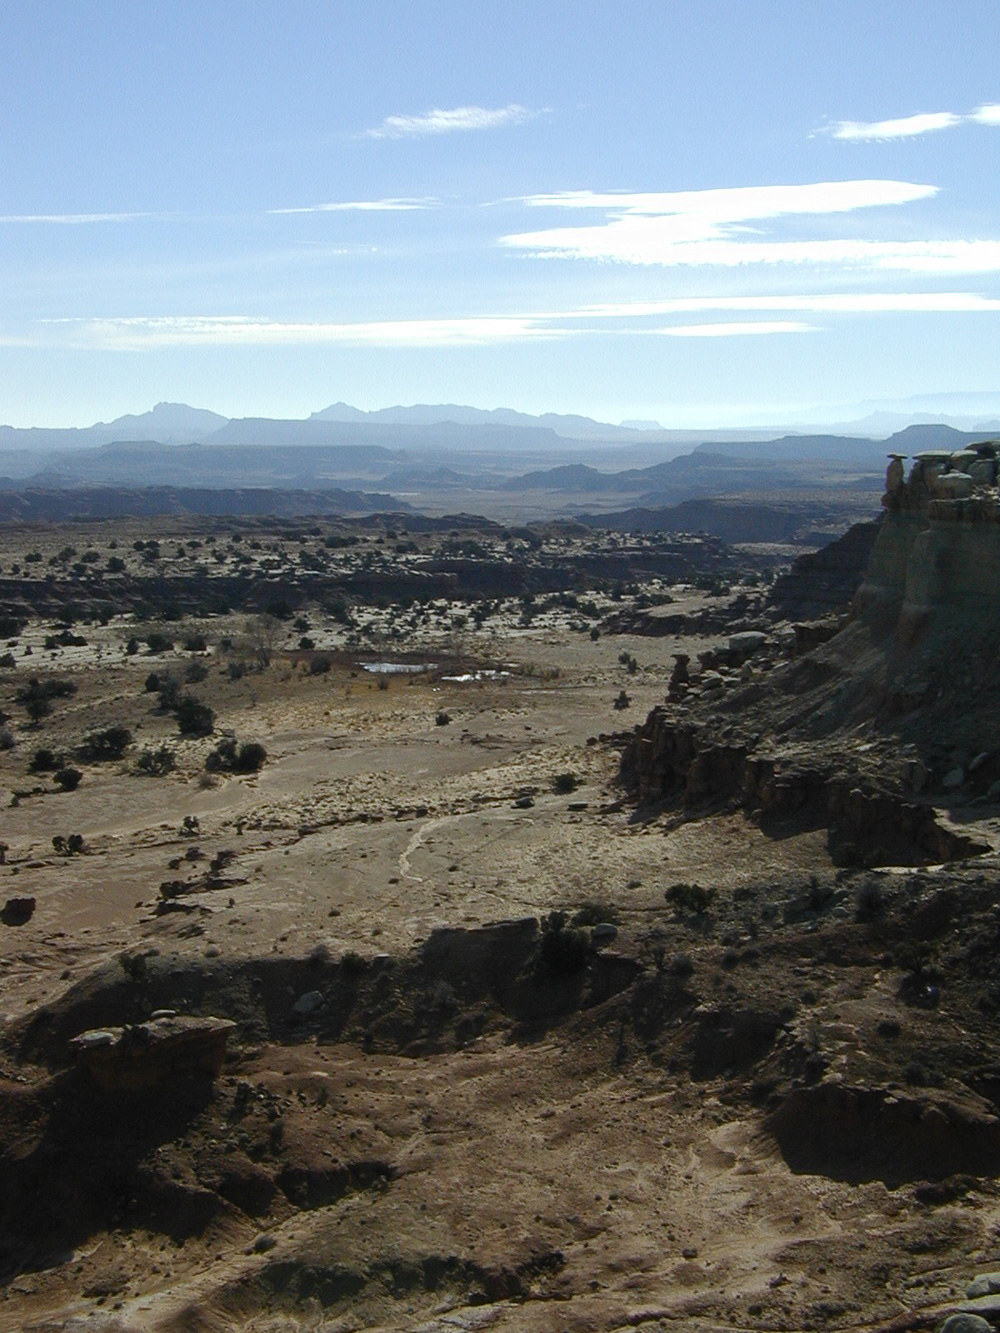 Unknown desert scene